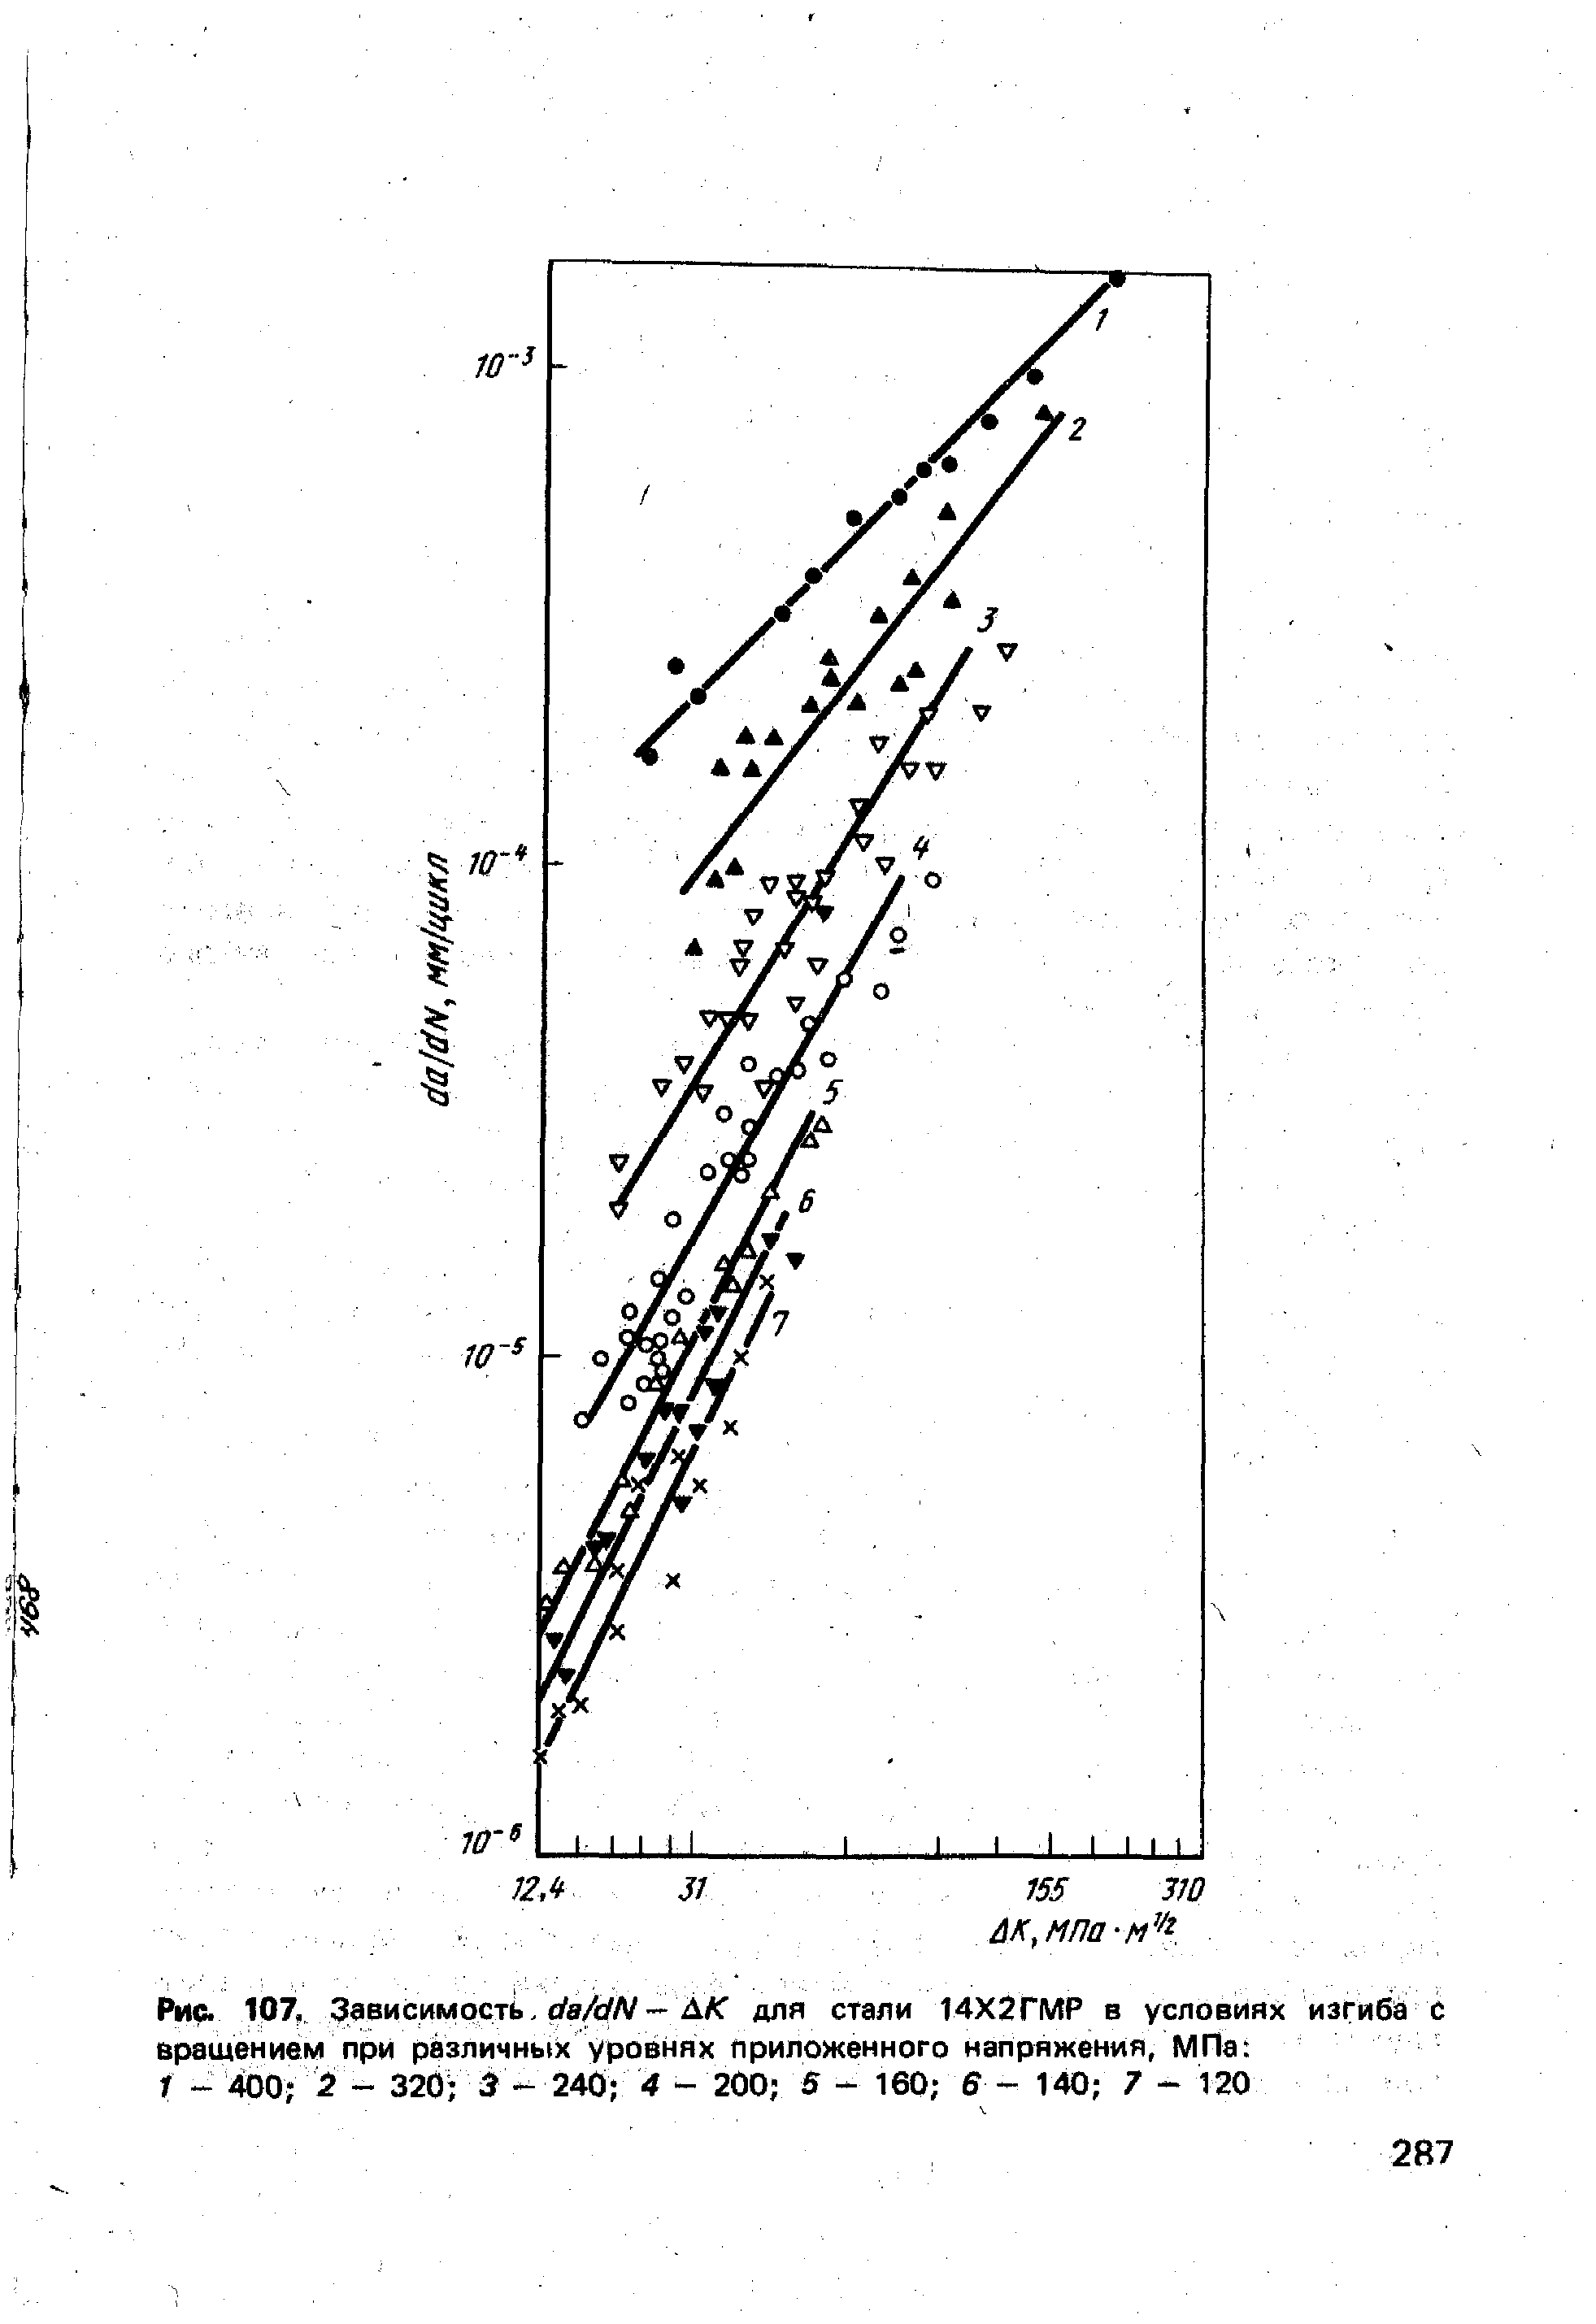 Рис. 107,. Зависимости rfe/t//V - ДАТ для стали 14Х2ГМР в условиях изгиба с вращением при различных уровнях приложенного напряжения, МПа 
